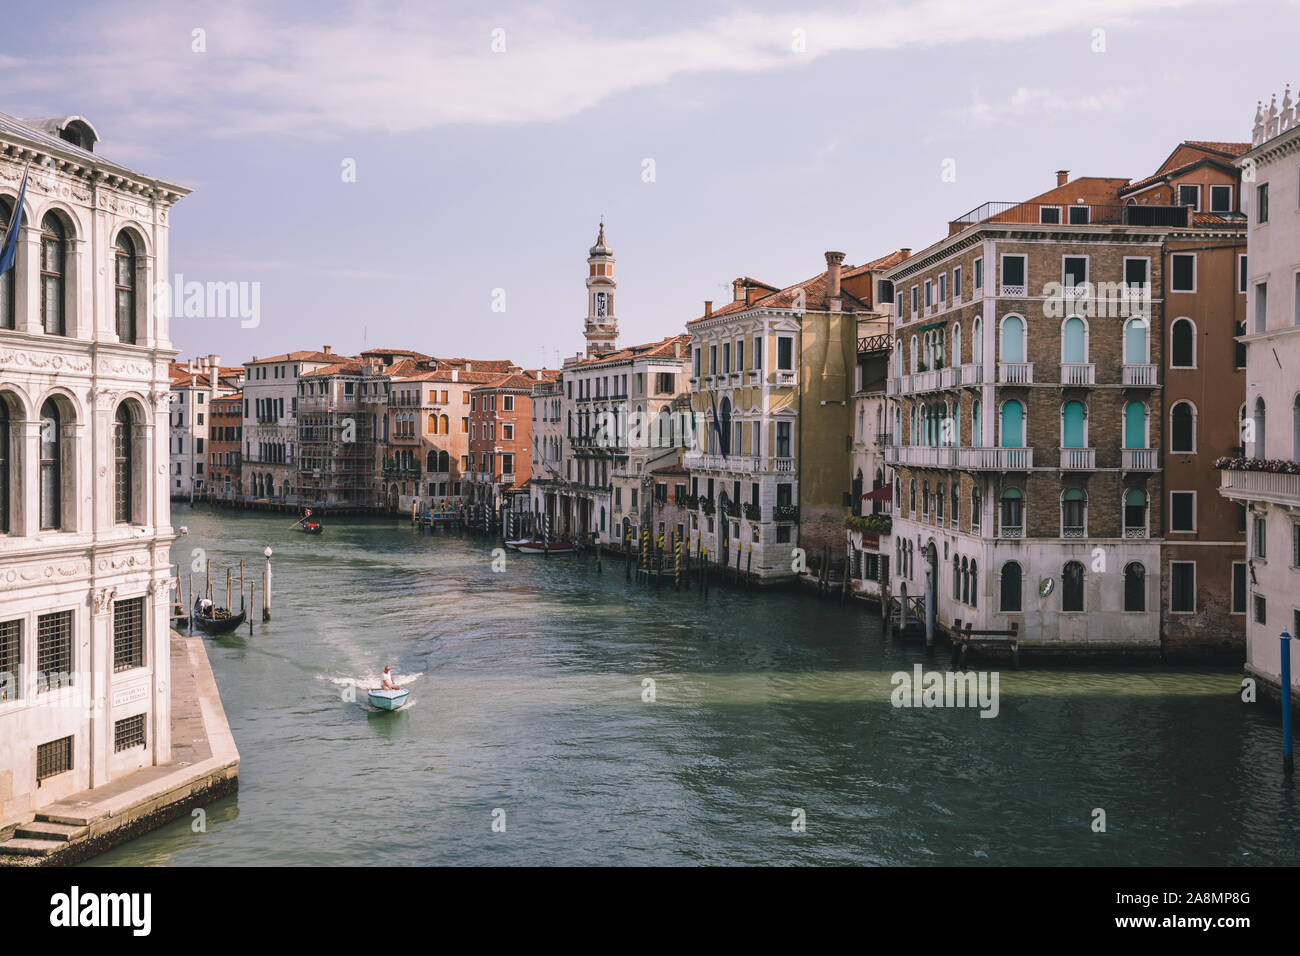 Venedig, Italien - 1. Juli 2018: Panoramablick auf Grand Canal (Canal Grande) von der Rialto Brücke entfernt. Es ist ein großes Wasser - Verkehrskorridore in Venedig Stadt. L Stockfoto